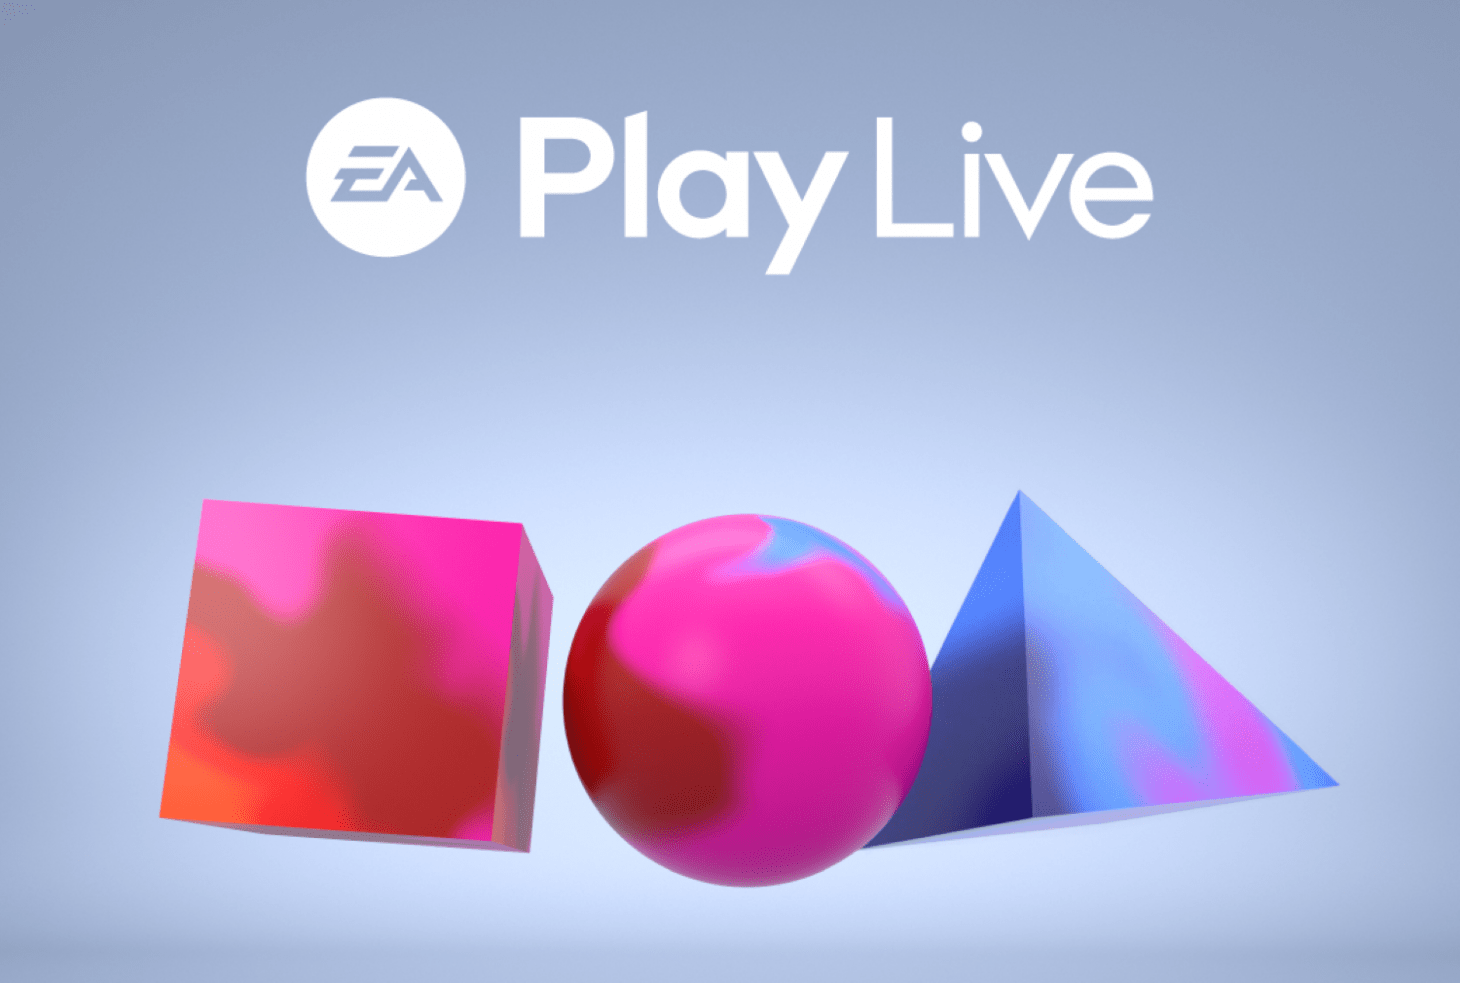 EA Play Live Runtime confermato a 40 minuti